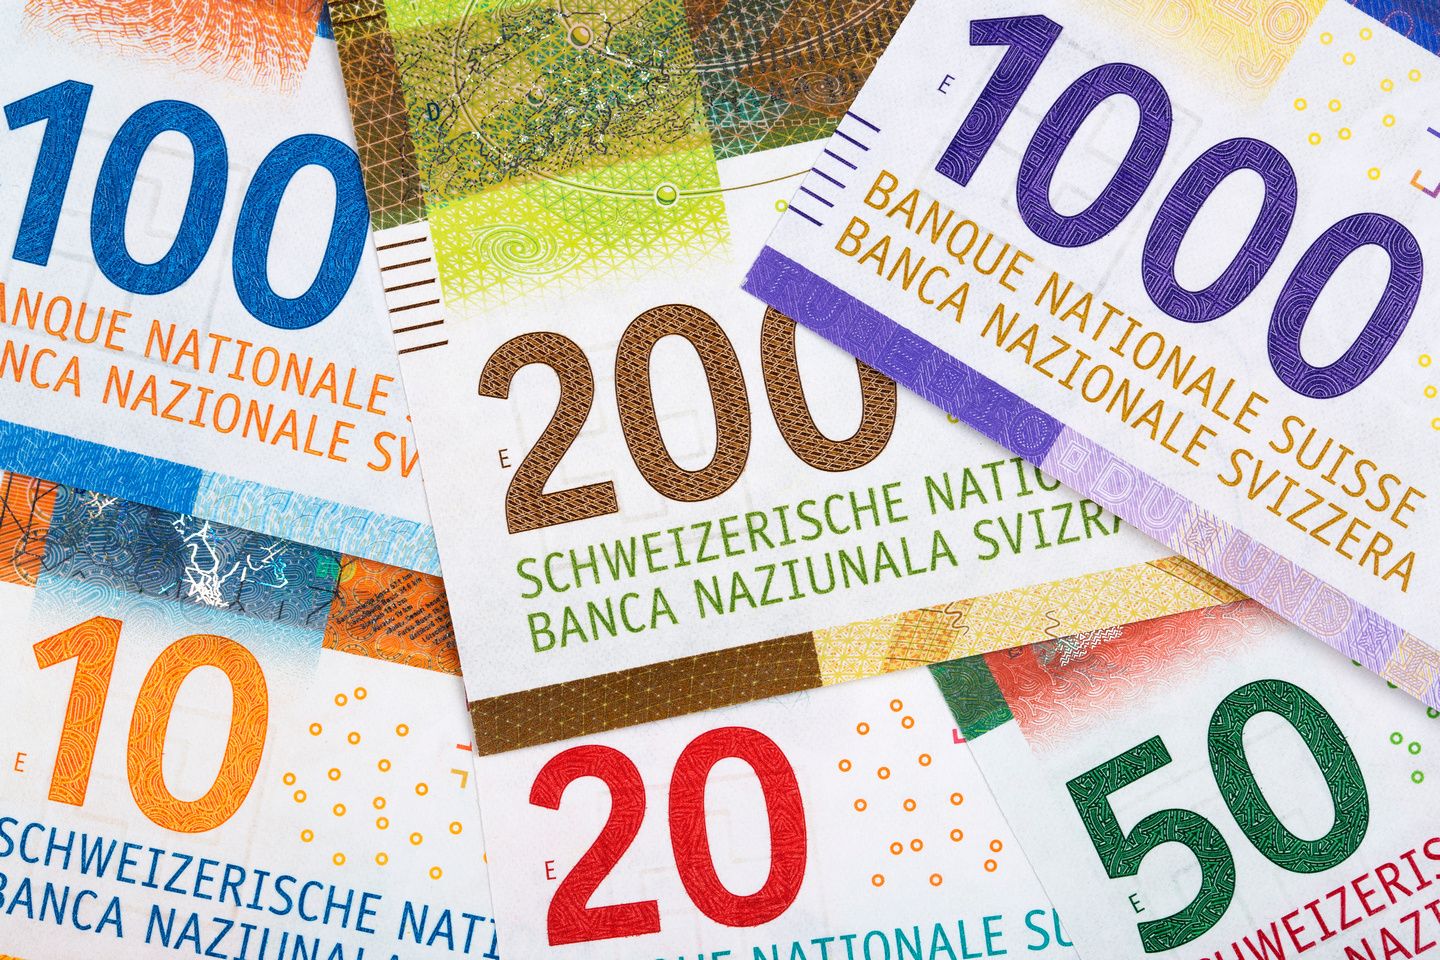 TSUE popiera frankowiczów. Czy każdy kredyt we frankach można unieważnić?